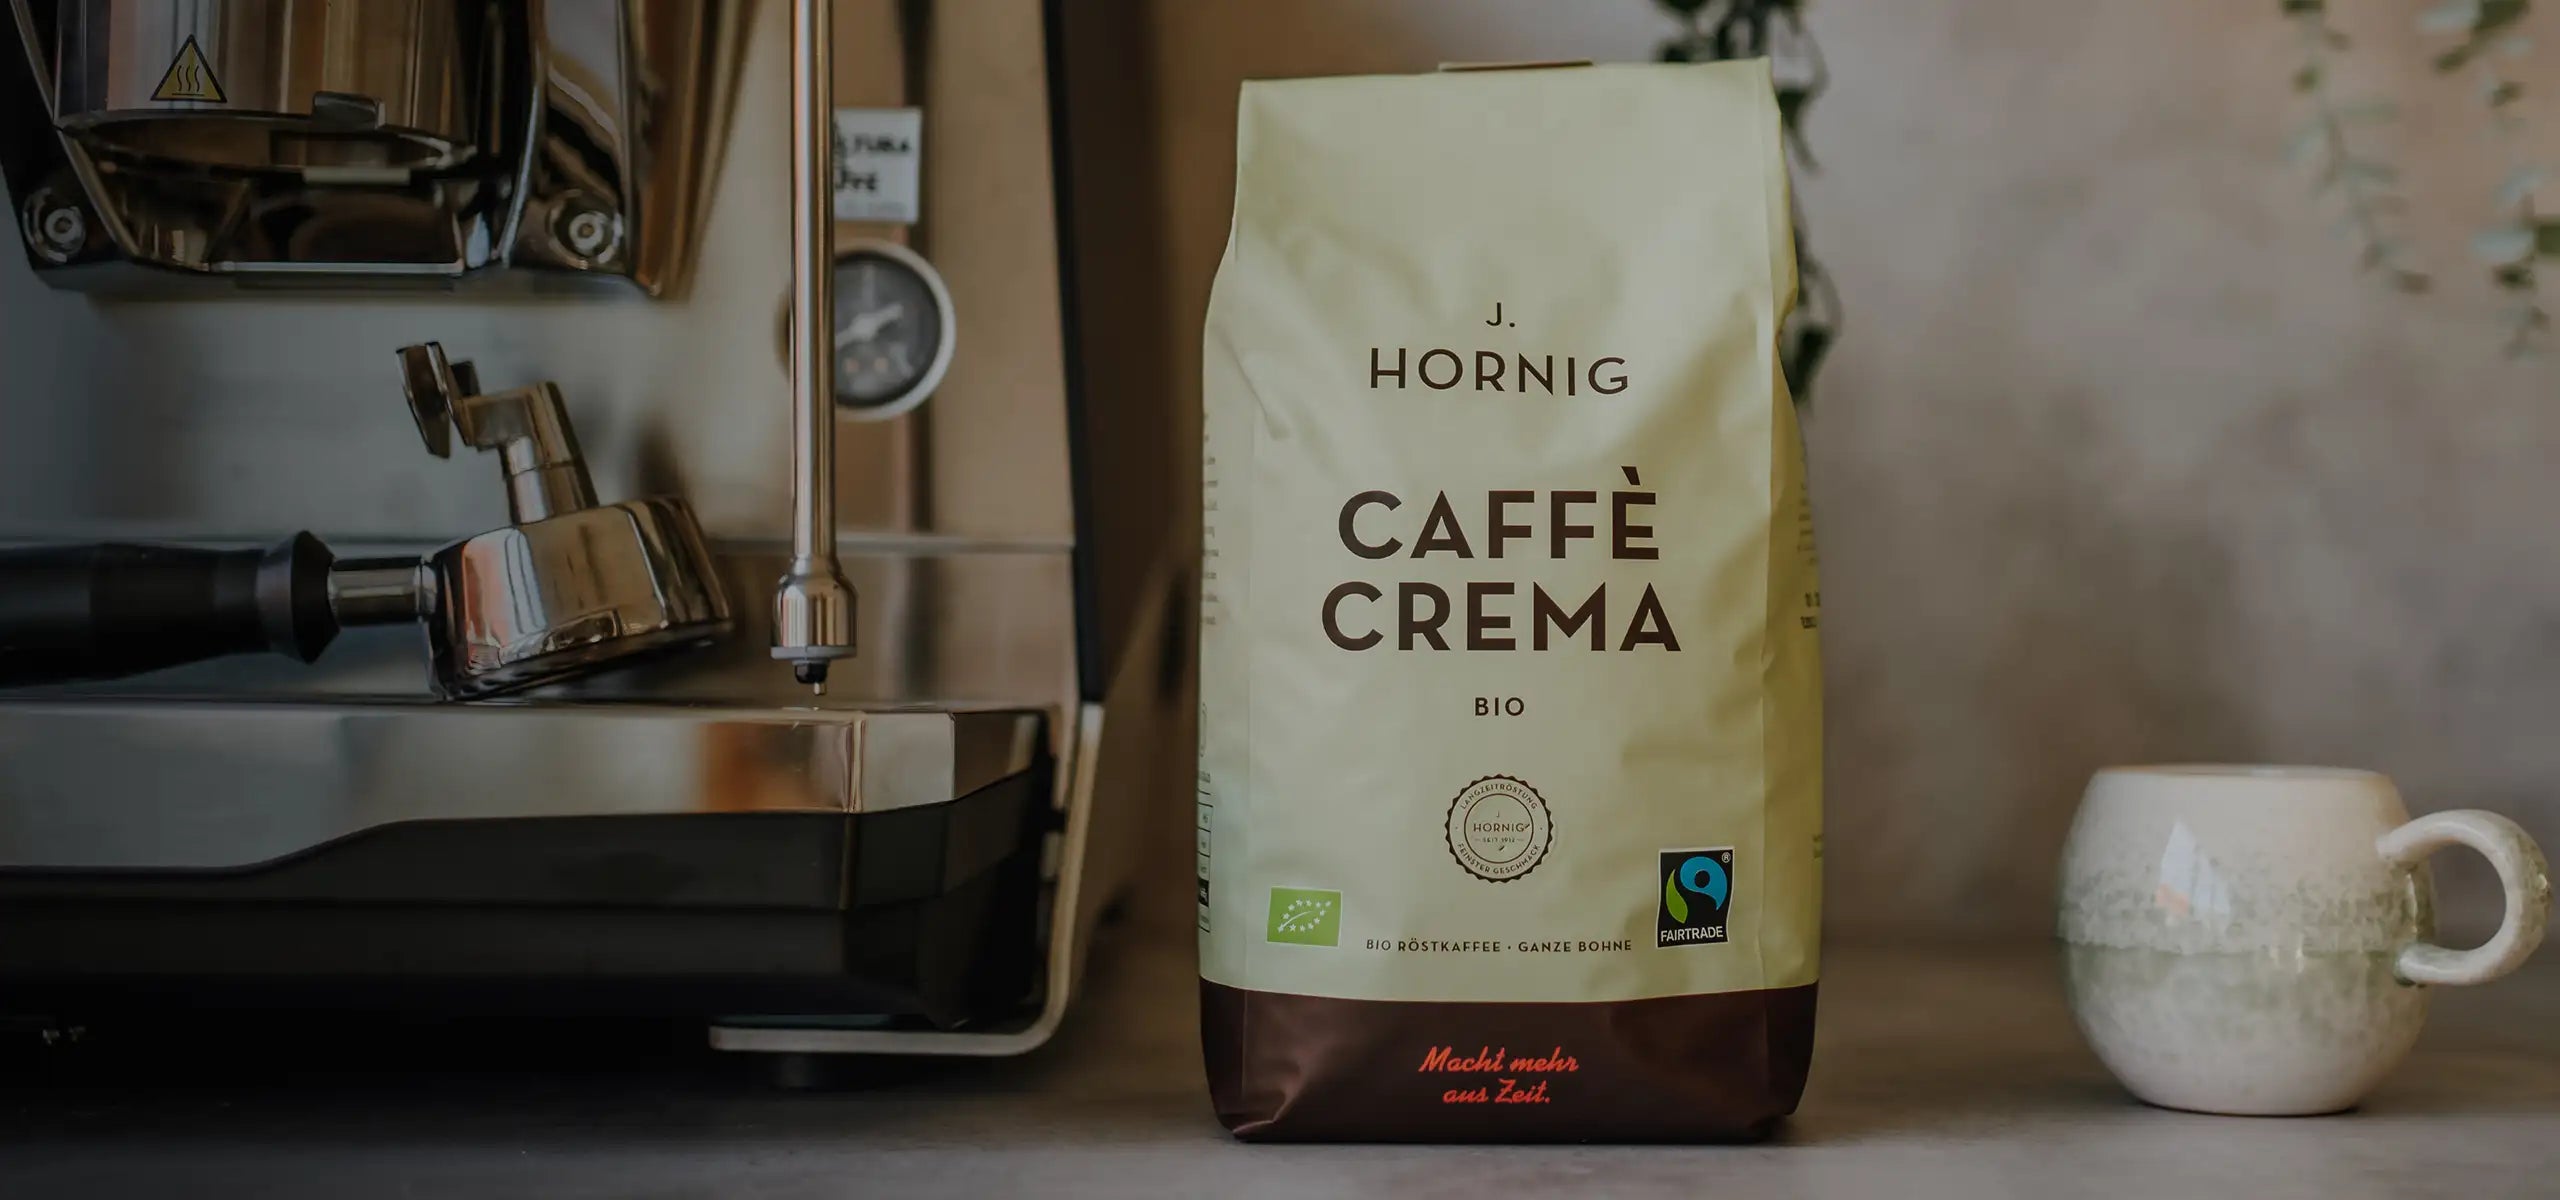 Eine Packung J. Hornig Caffe Crema Bio neben einer Siebträgermaschine und einer Kaffeetasse